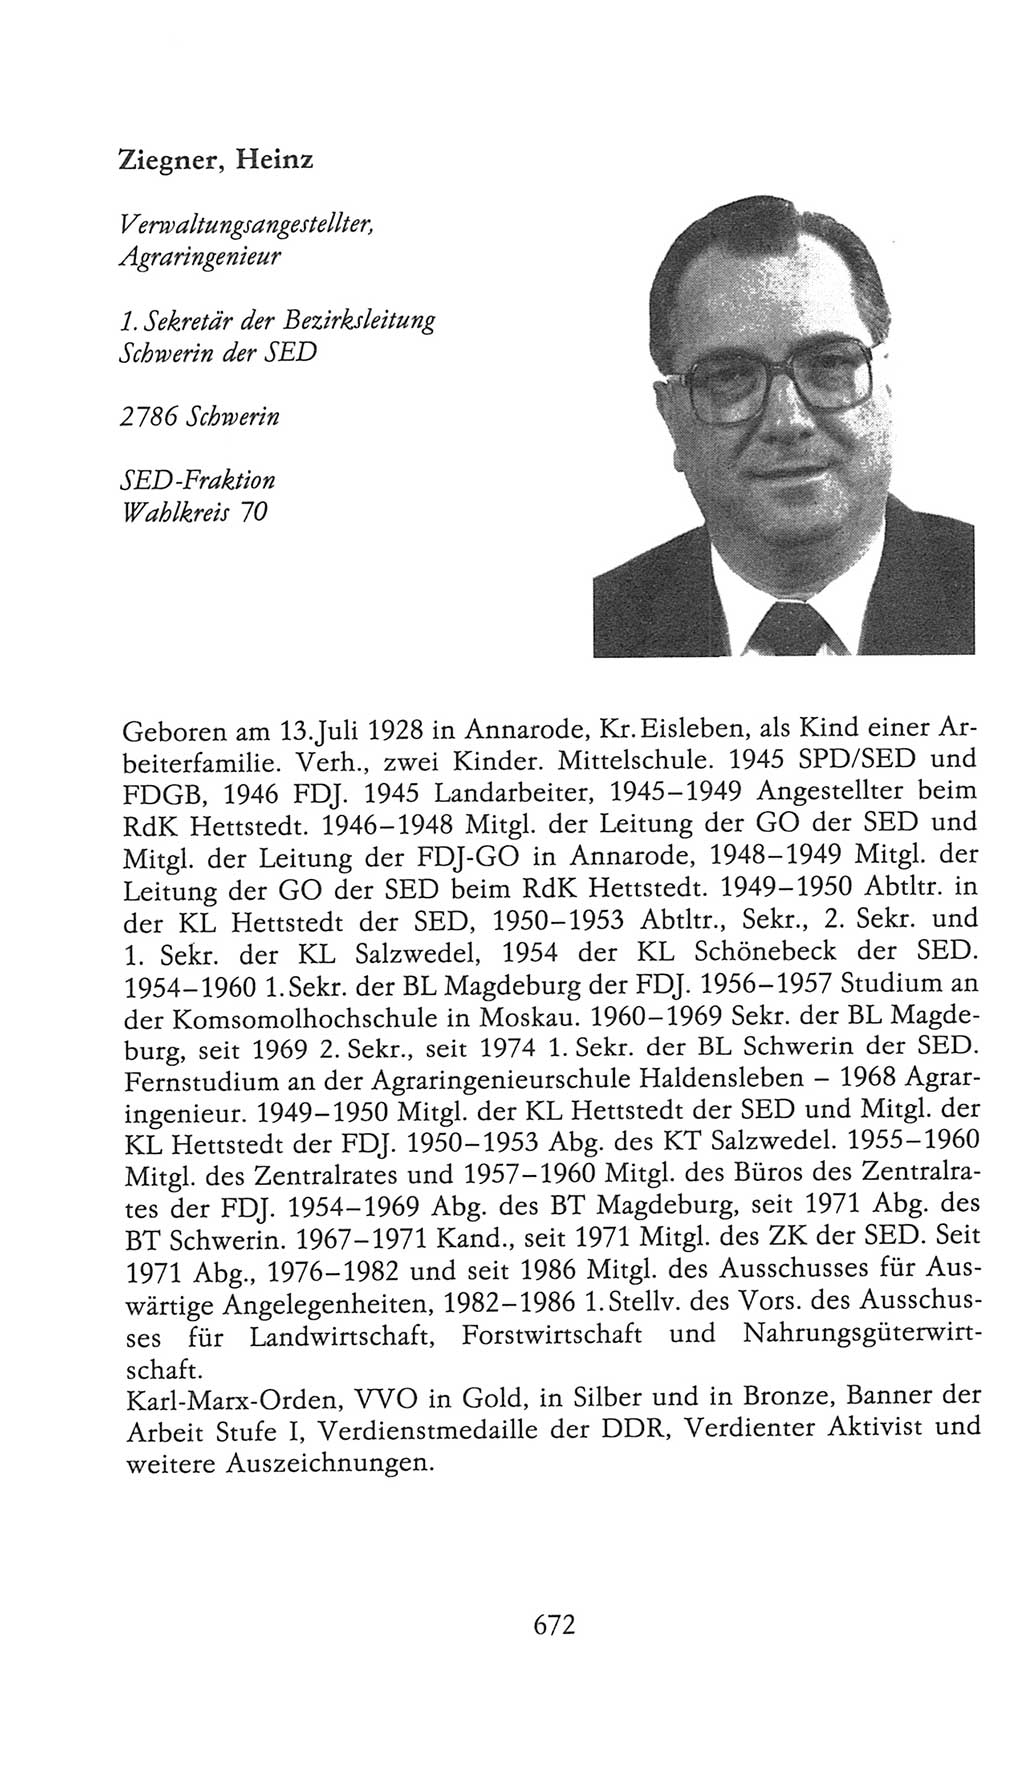 Volkskammer (VK) der Deutschen Demokratischen Republik (DDR), 9. Wahlperiode 1986-1990, Seite 672 (VK. DDR 9. WP. 1986-1990, S. 672)